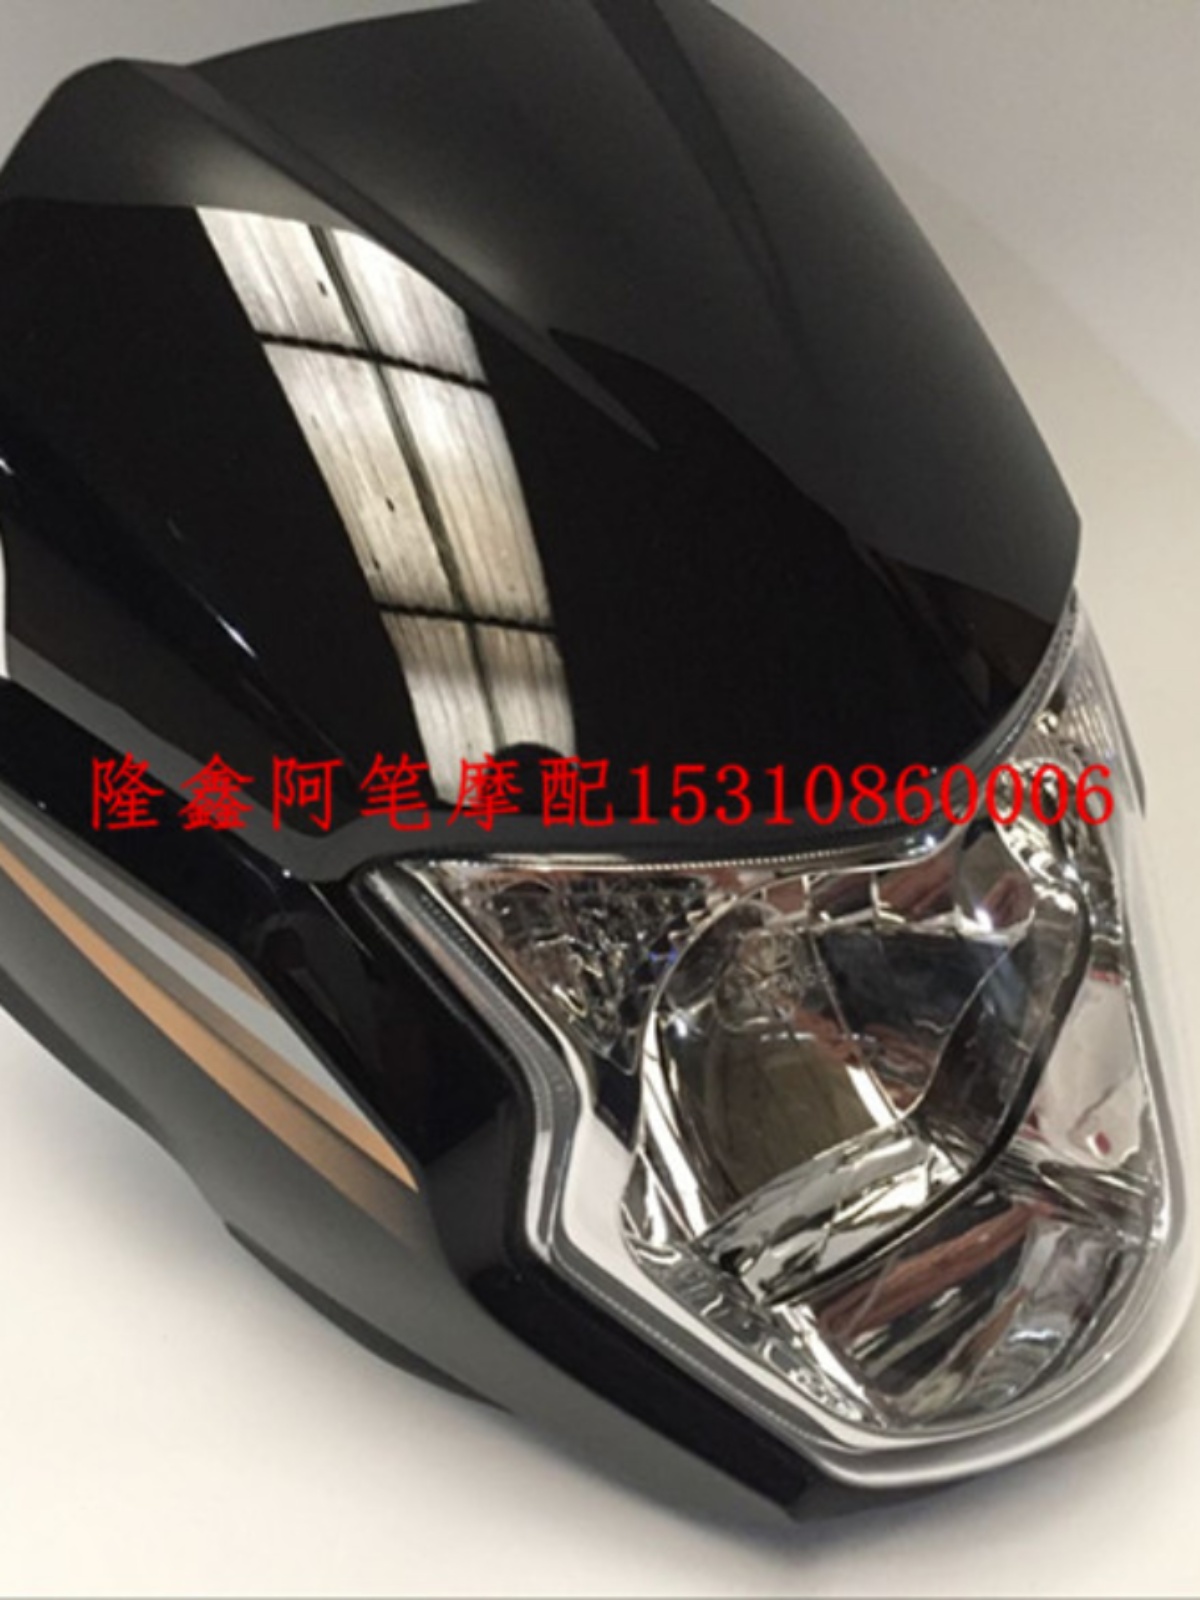 新品劲隆摩托车JL150-51 kmf头罩版原装导流罩 大灯 仪表 玻璃